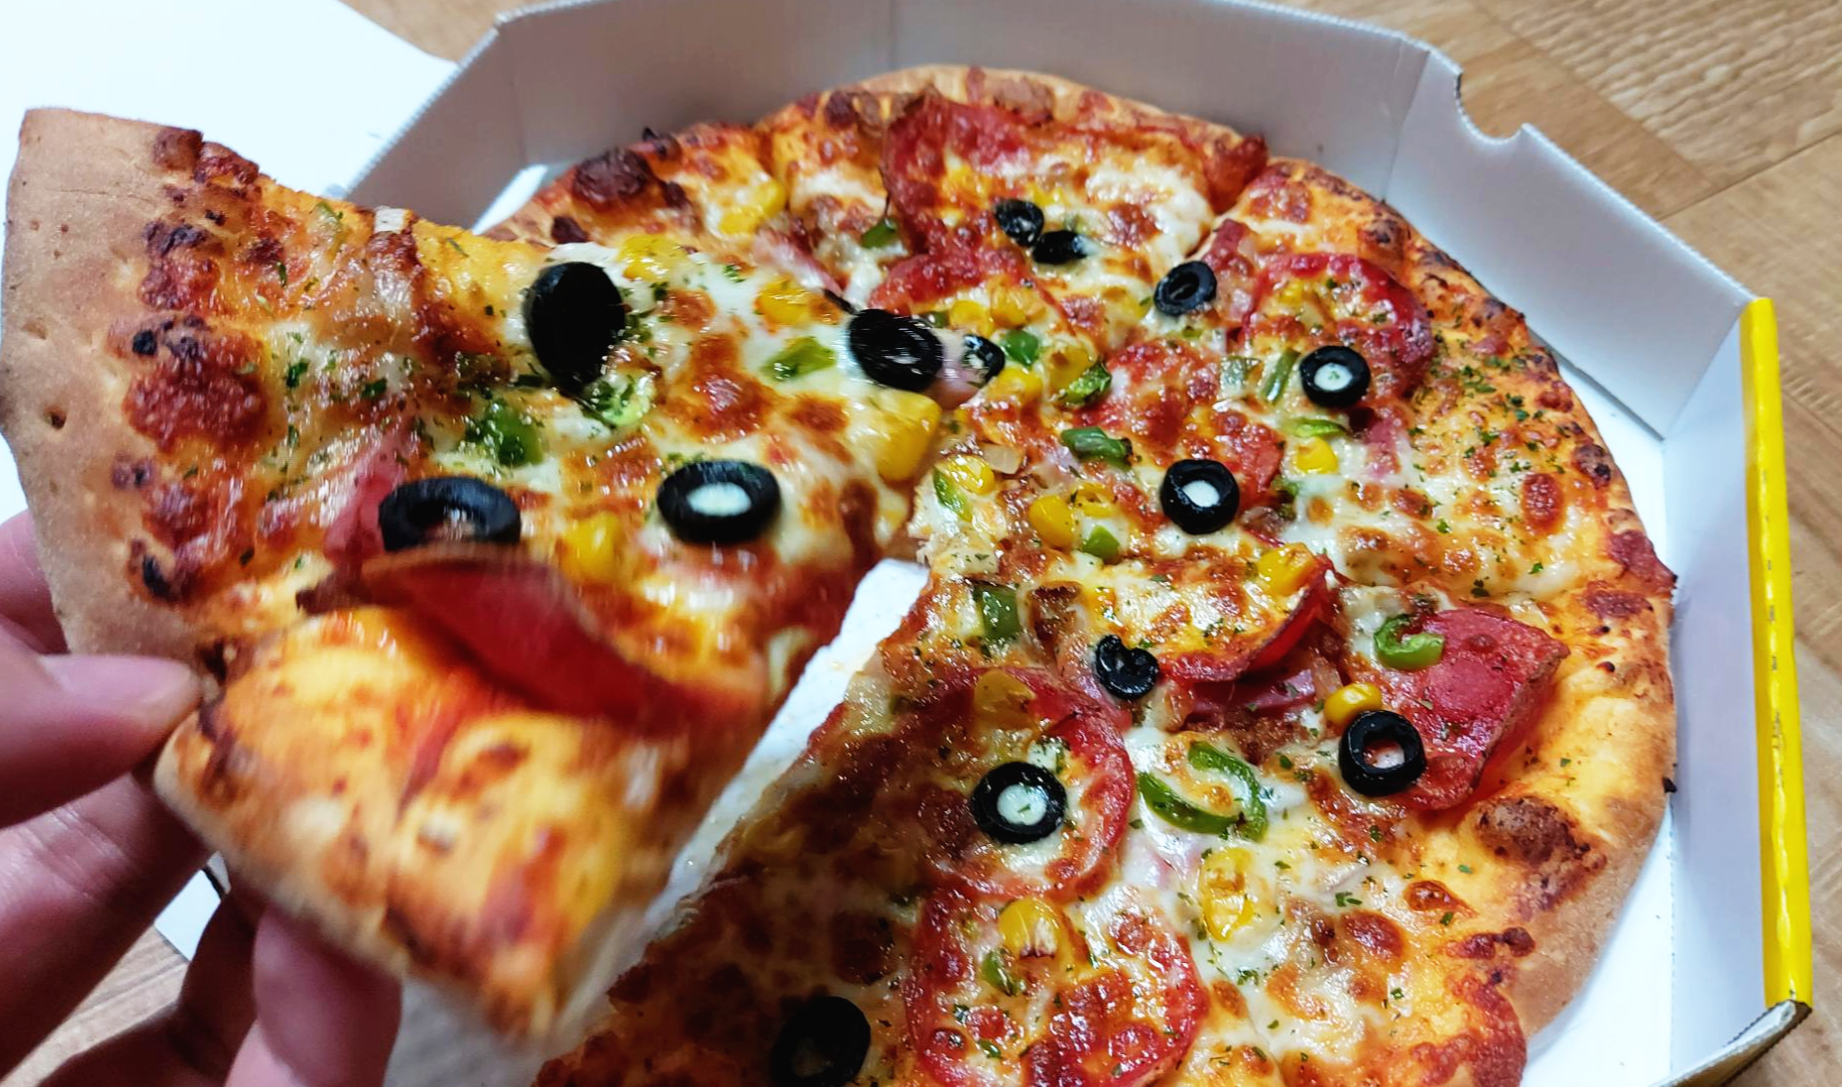 반올림피자샵 콤비네이션 피자 레귤러